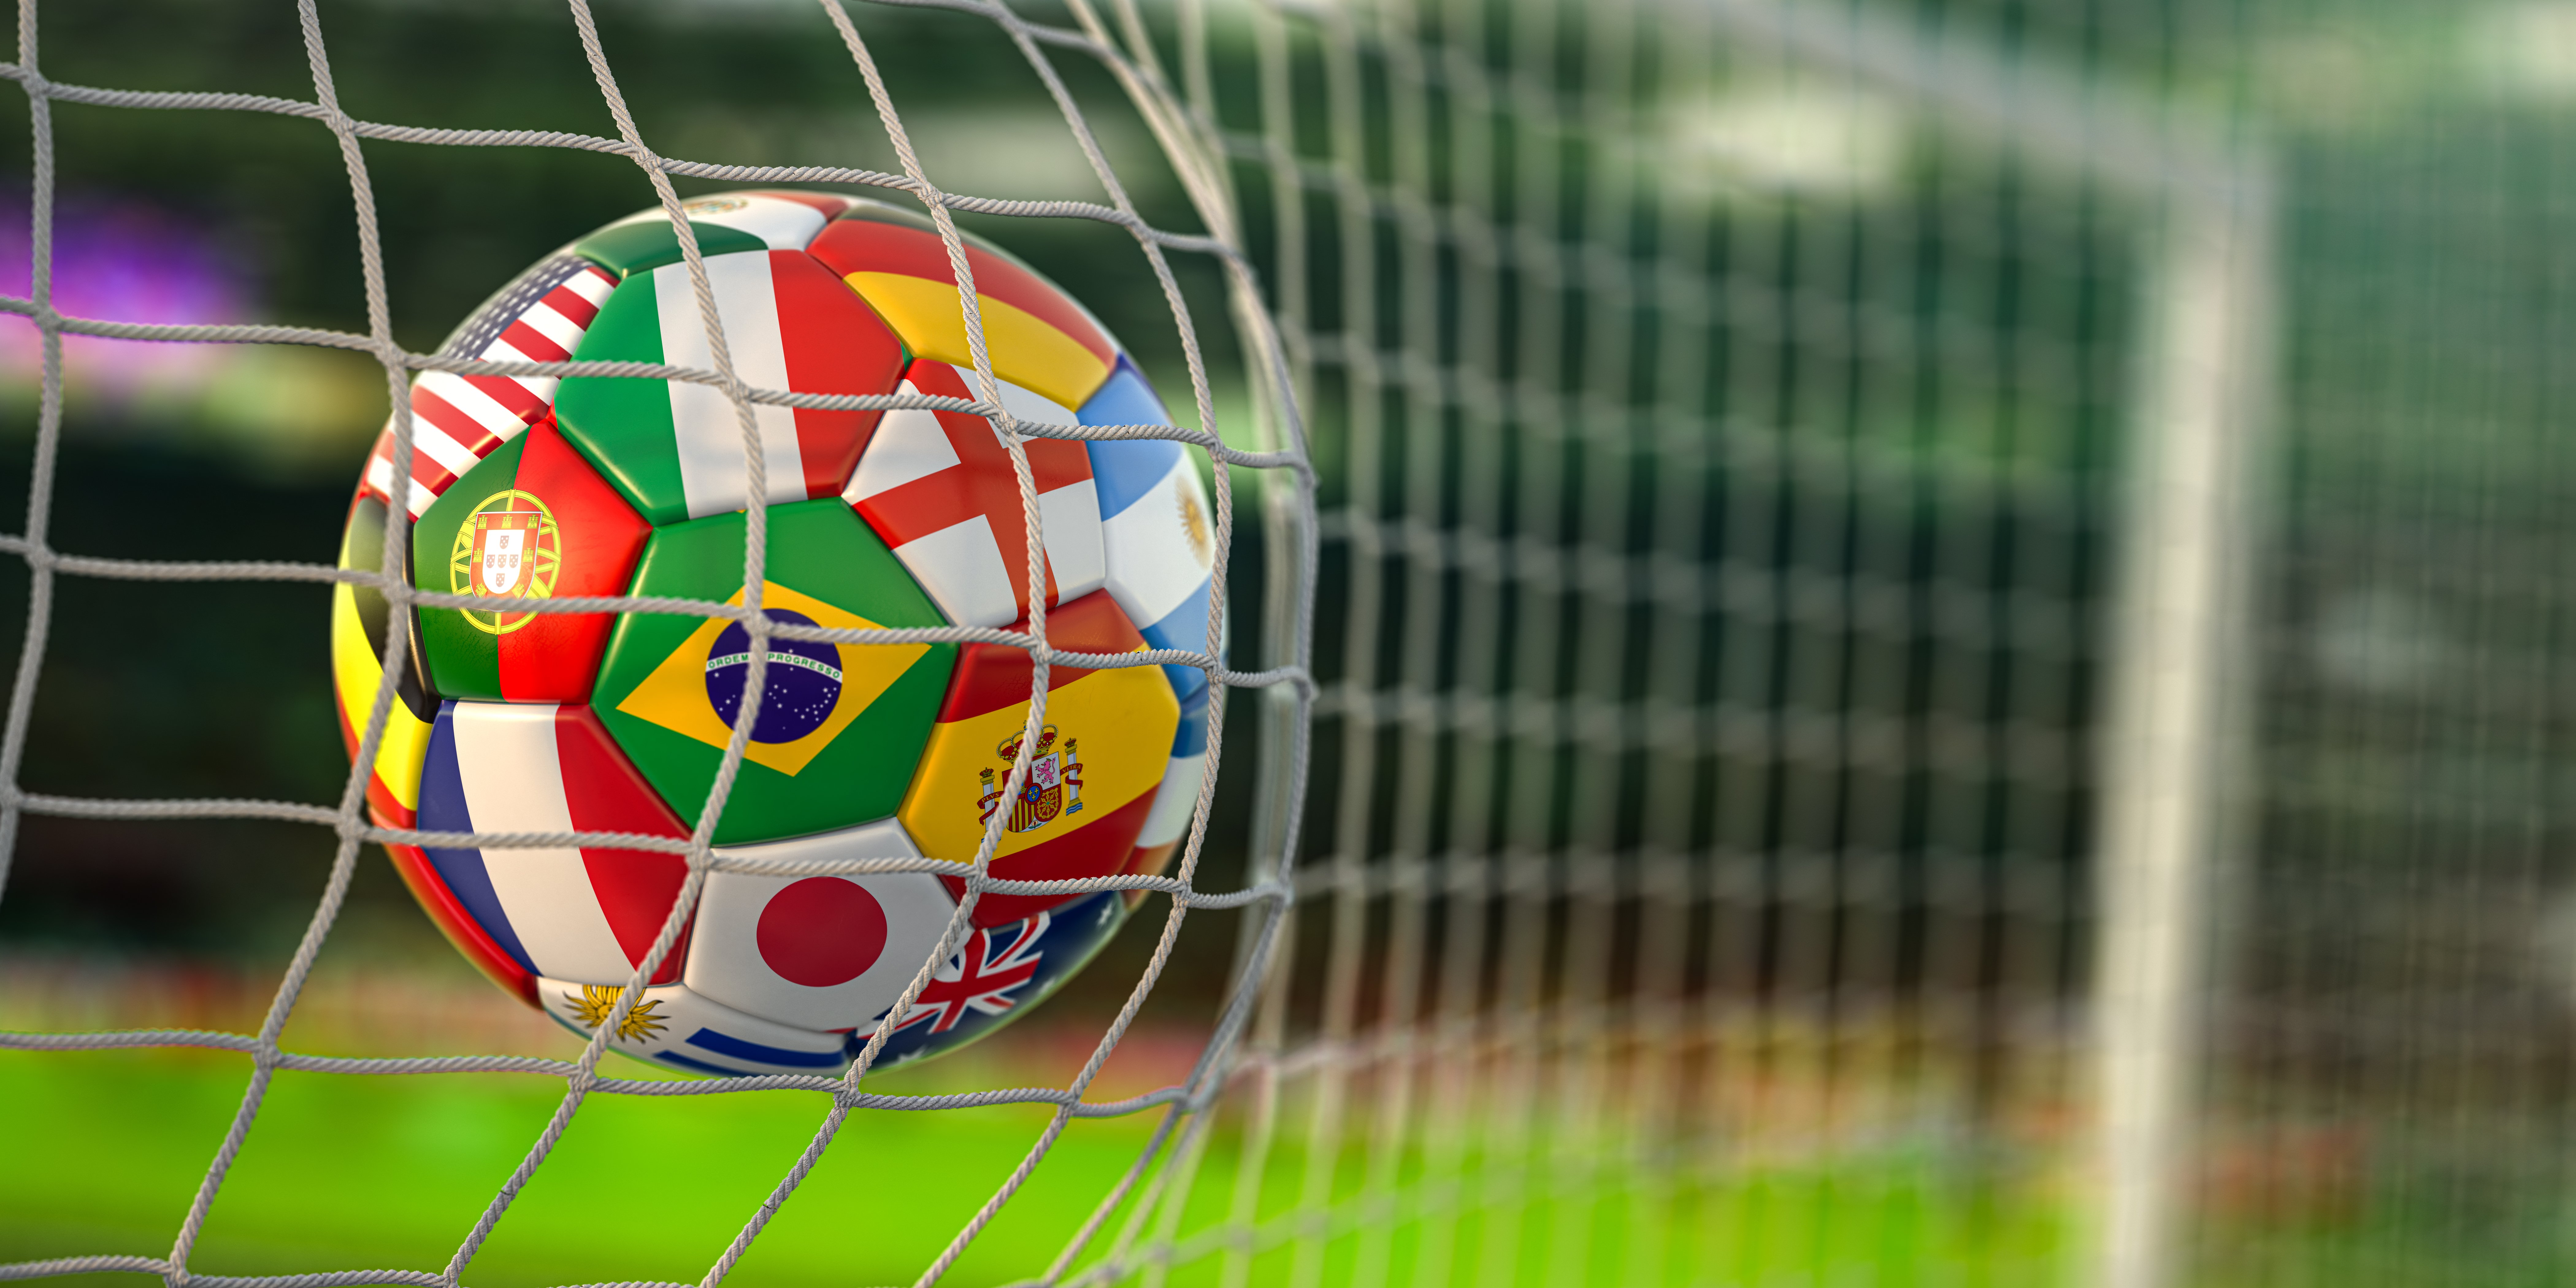 Soccer ball in net.